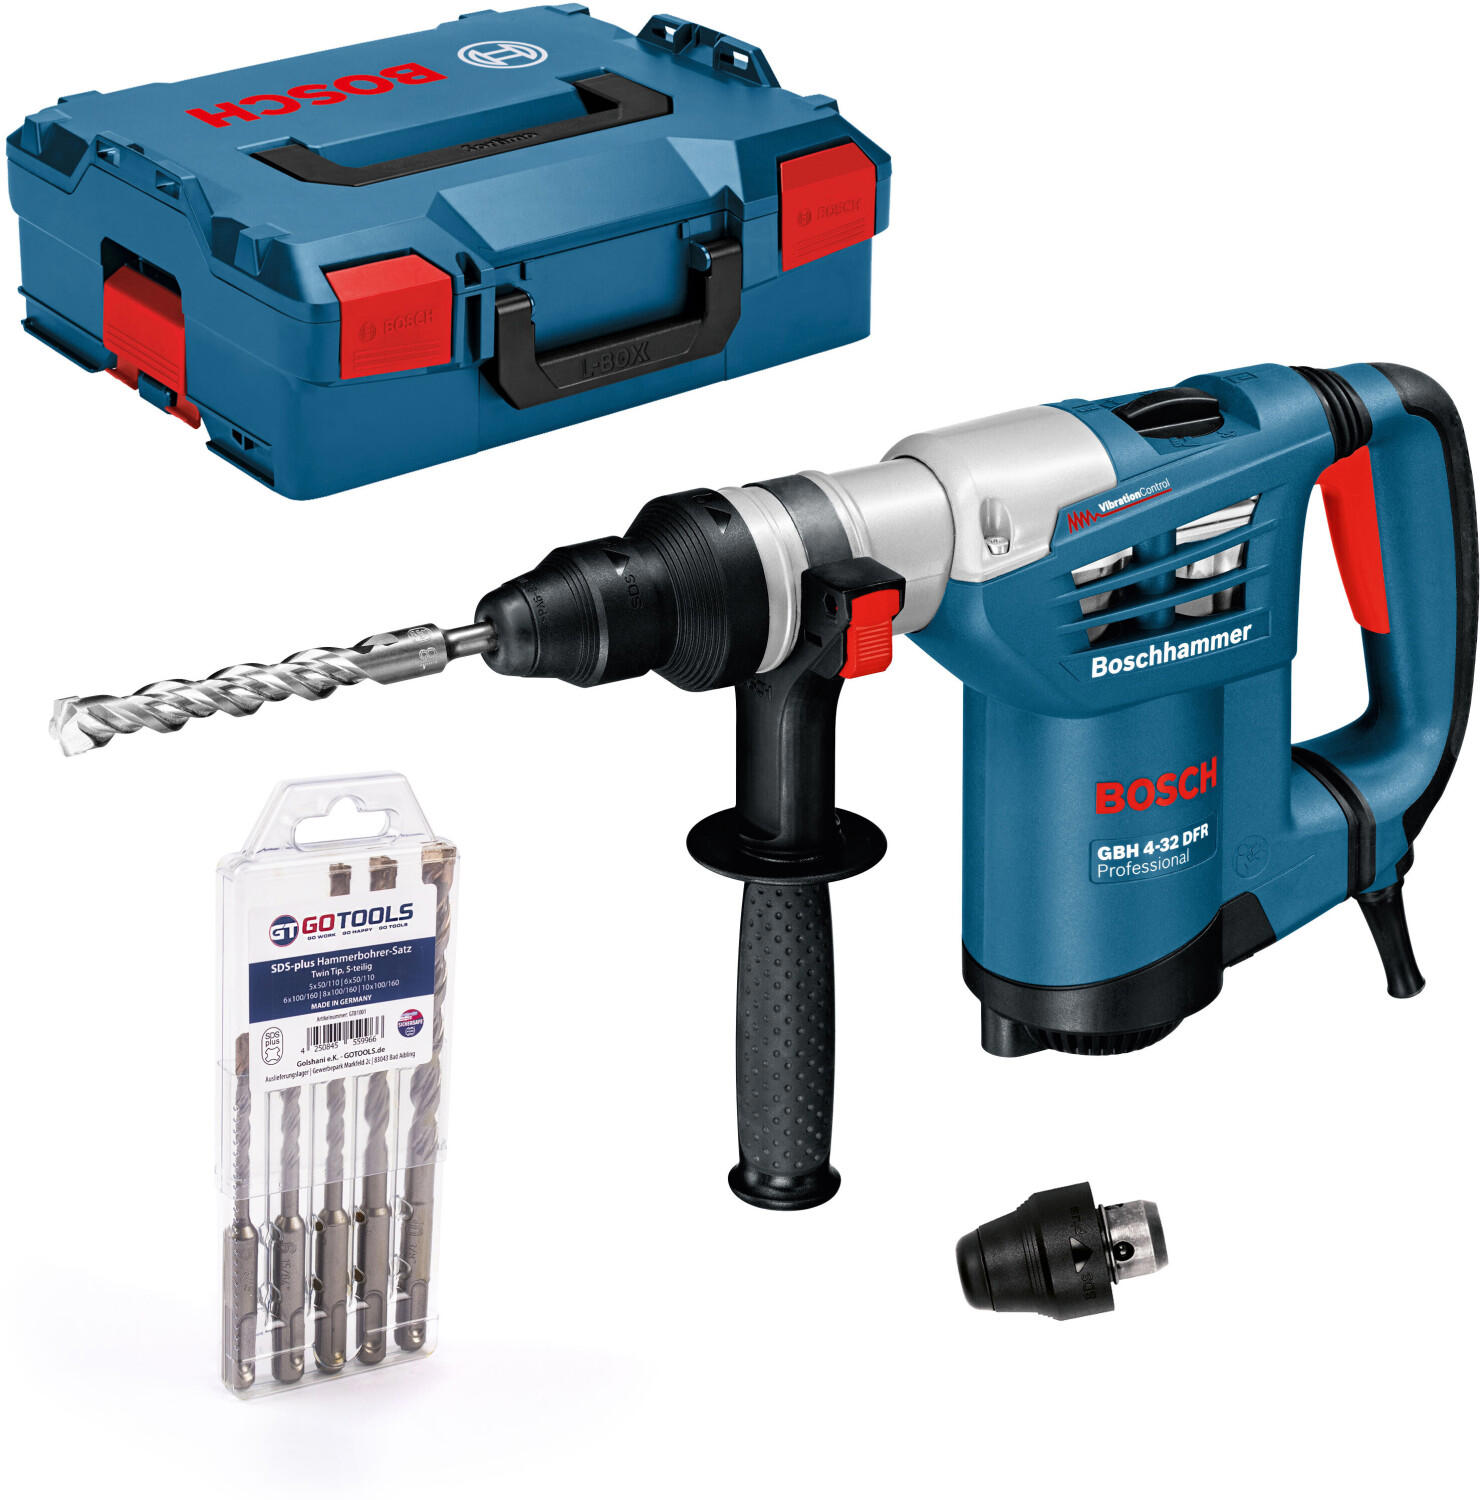 Bosch GBH 4-32 DFR Professional (Hammer drill set 5 pcs.)